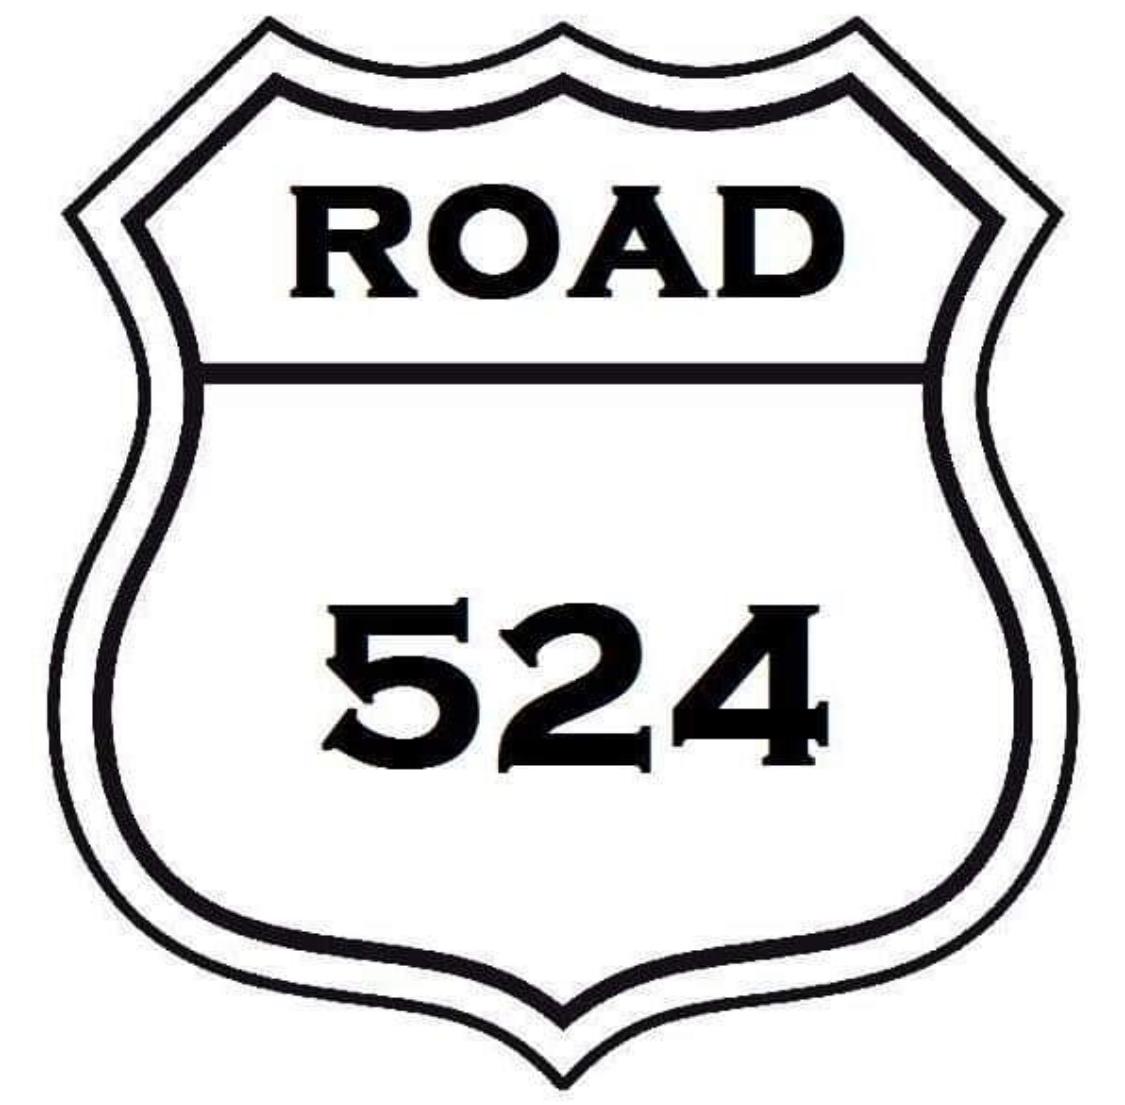 Truckfly - Road 524